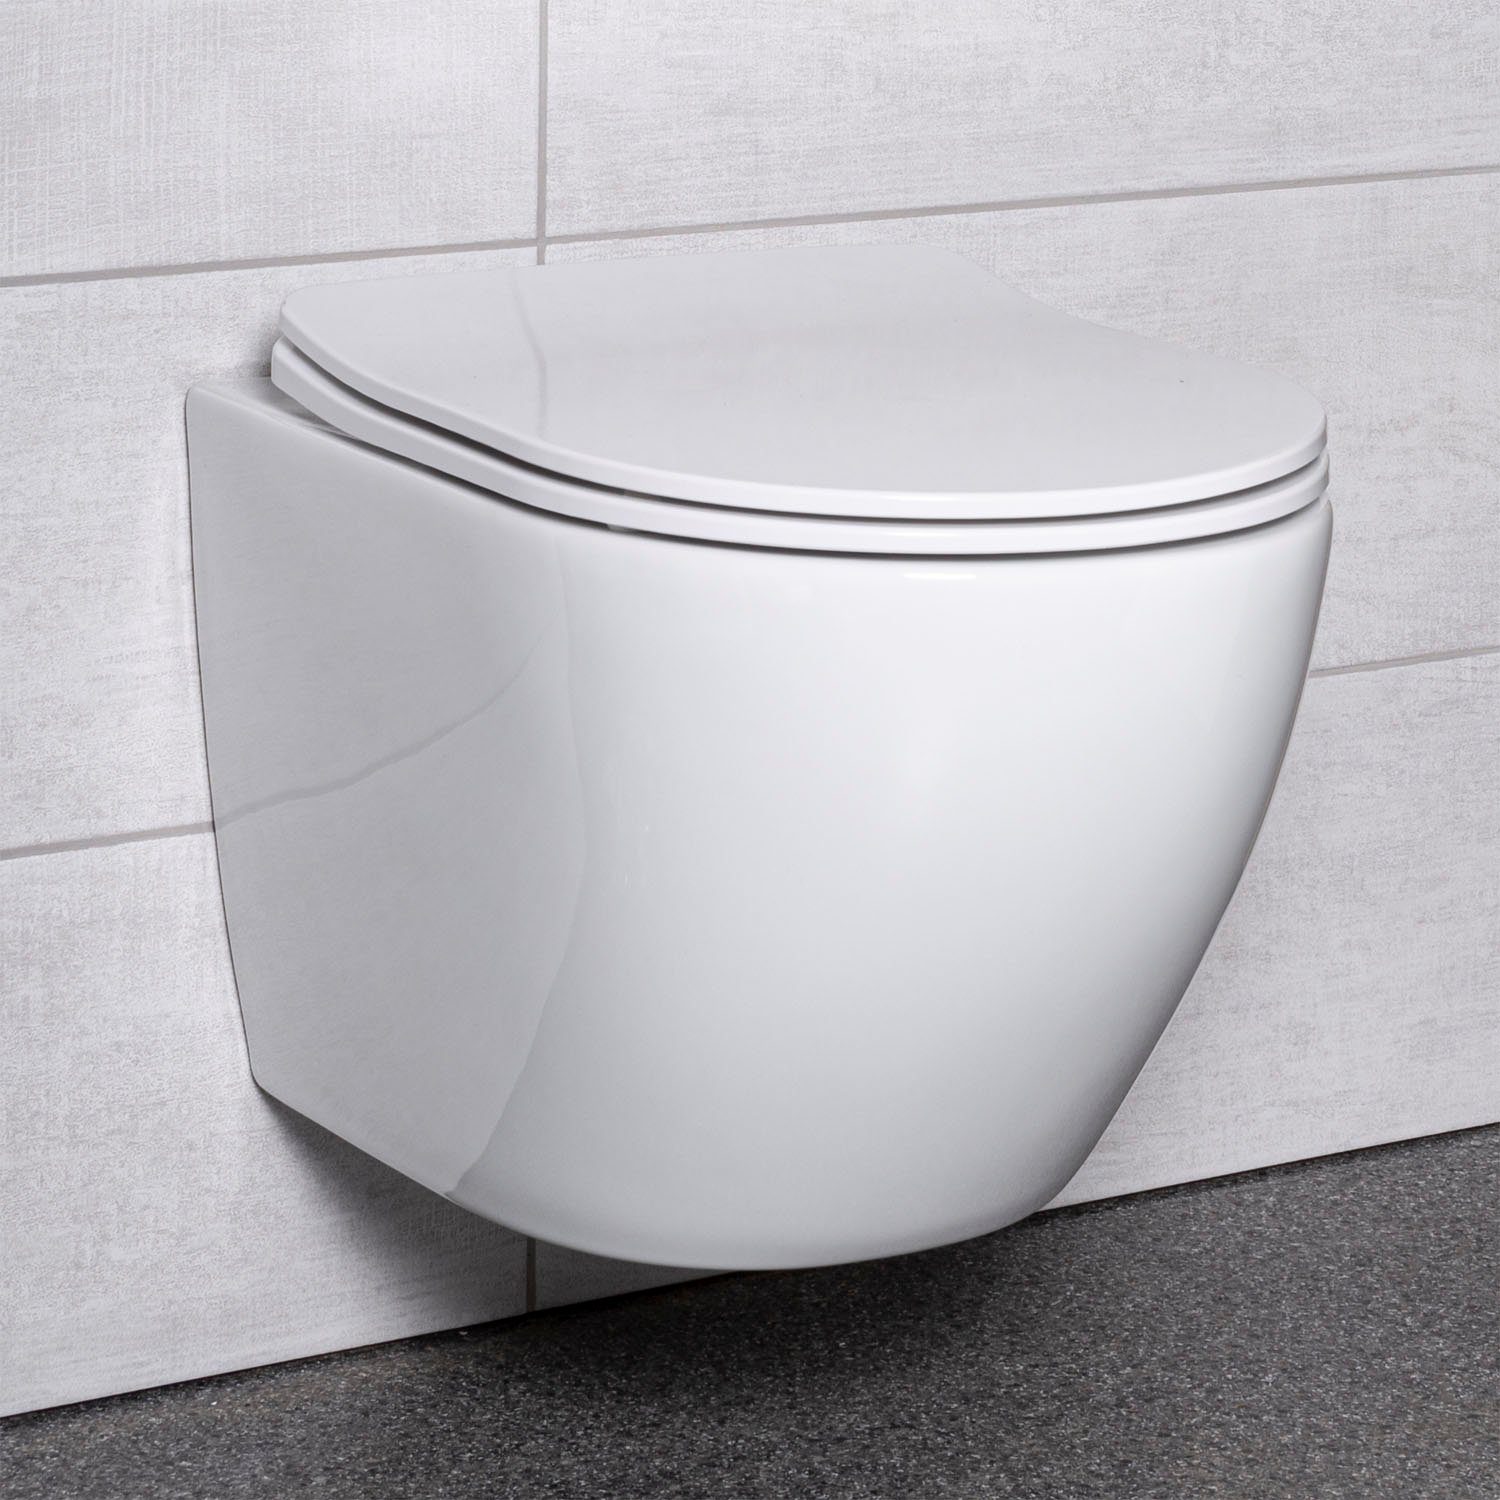 KOLMAN Tiefspül-WC Spülrandlos Wand-WC Delos, Weiß, mit Slim Soft-close WC- Sitz und Schallschutzmatte | WCs & Toiletten